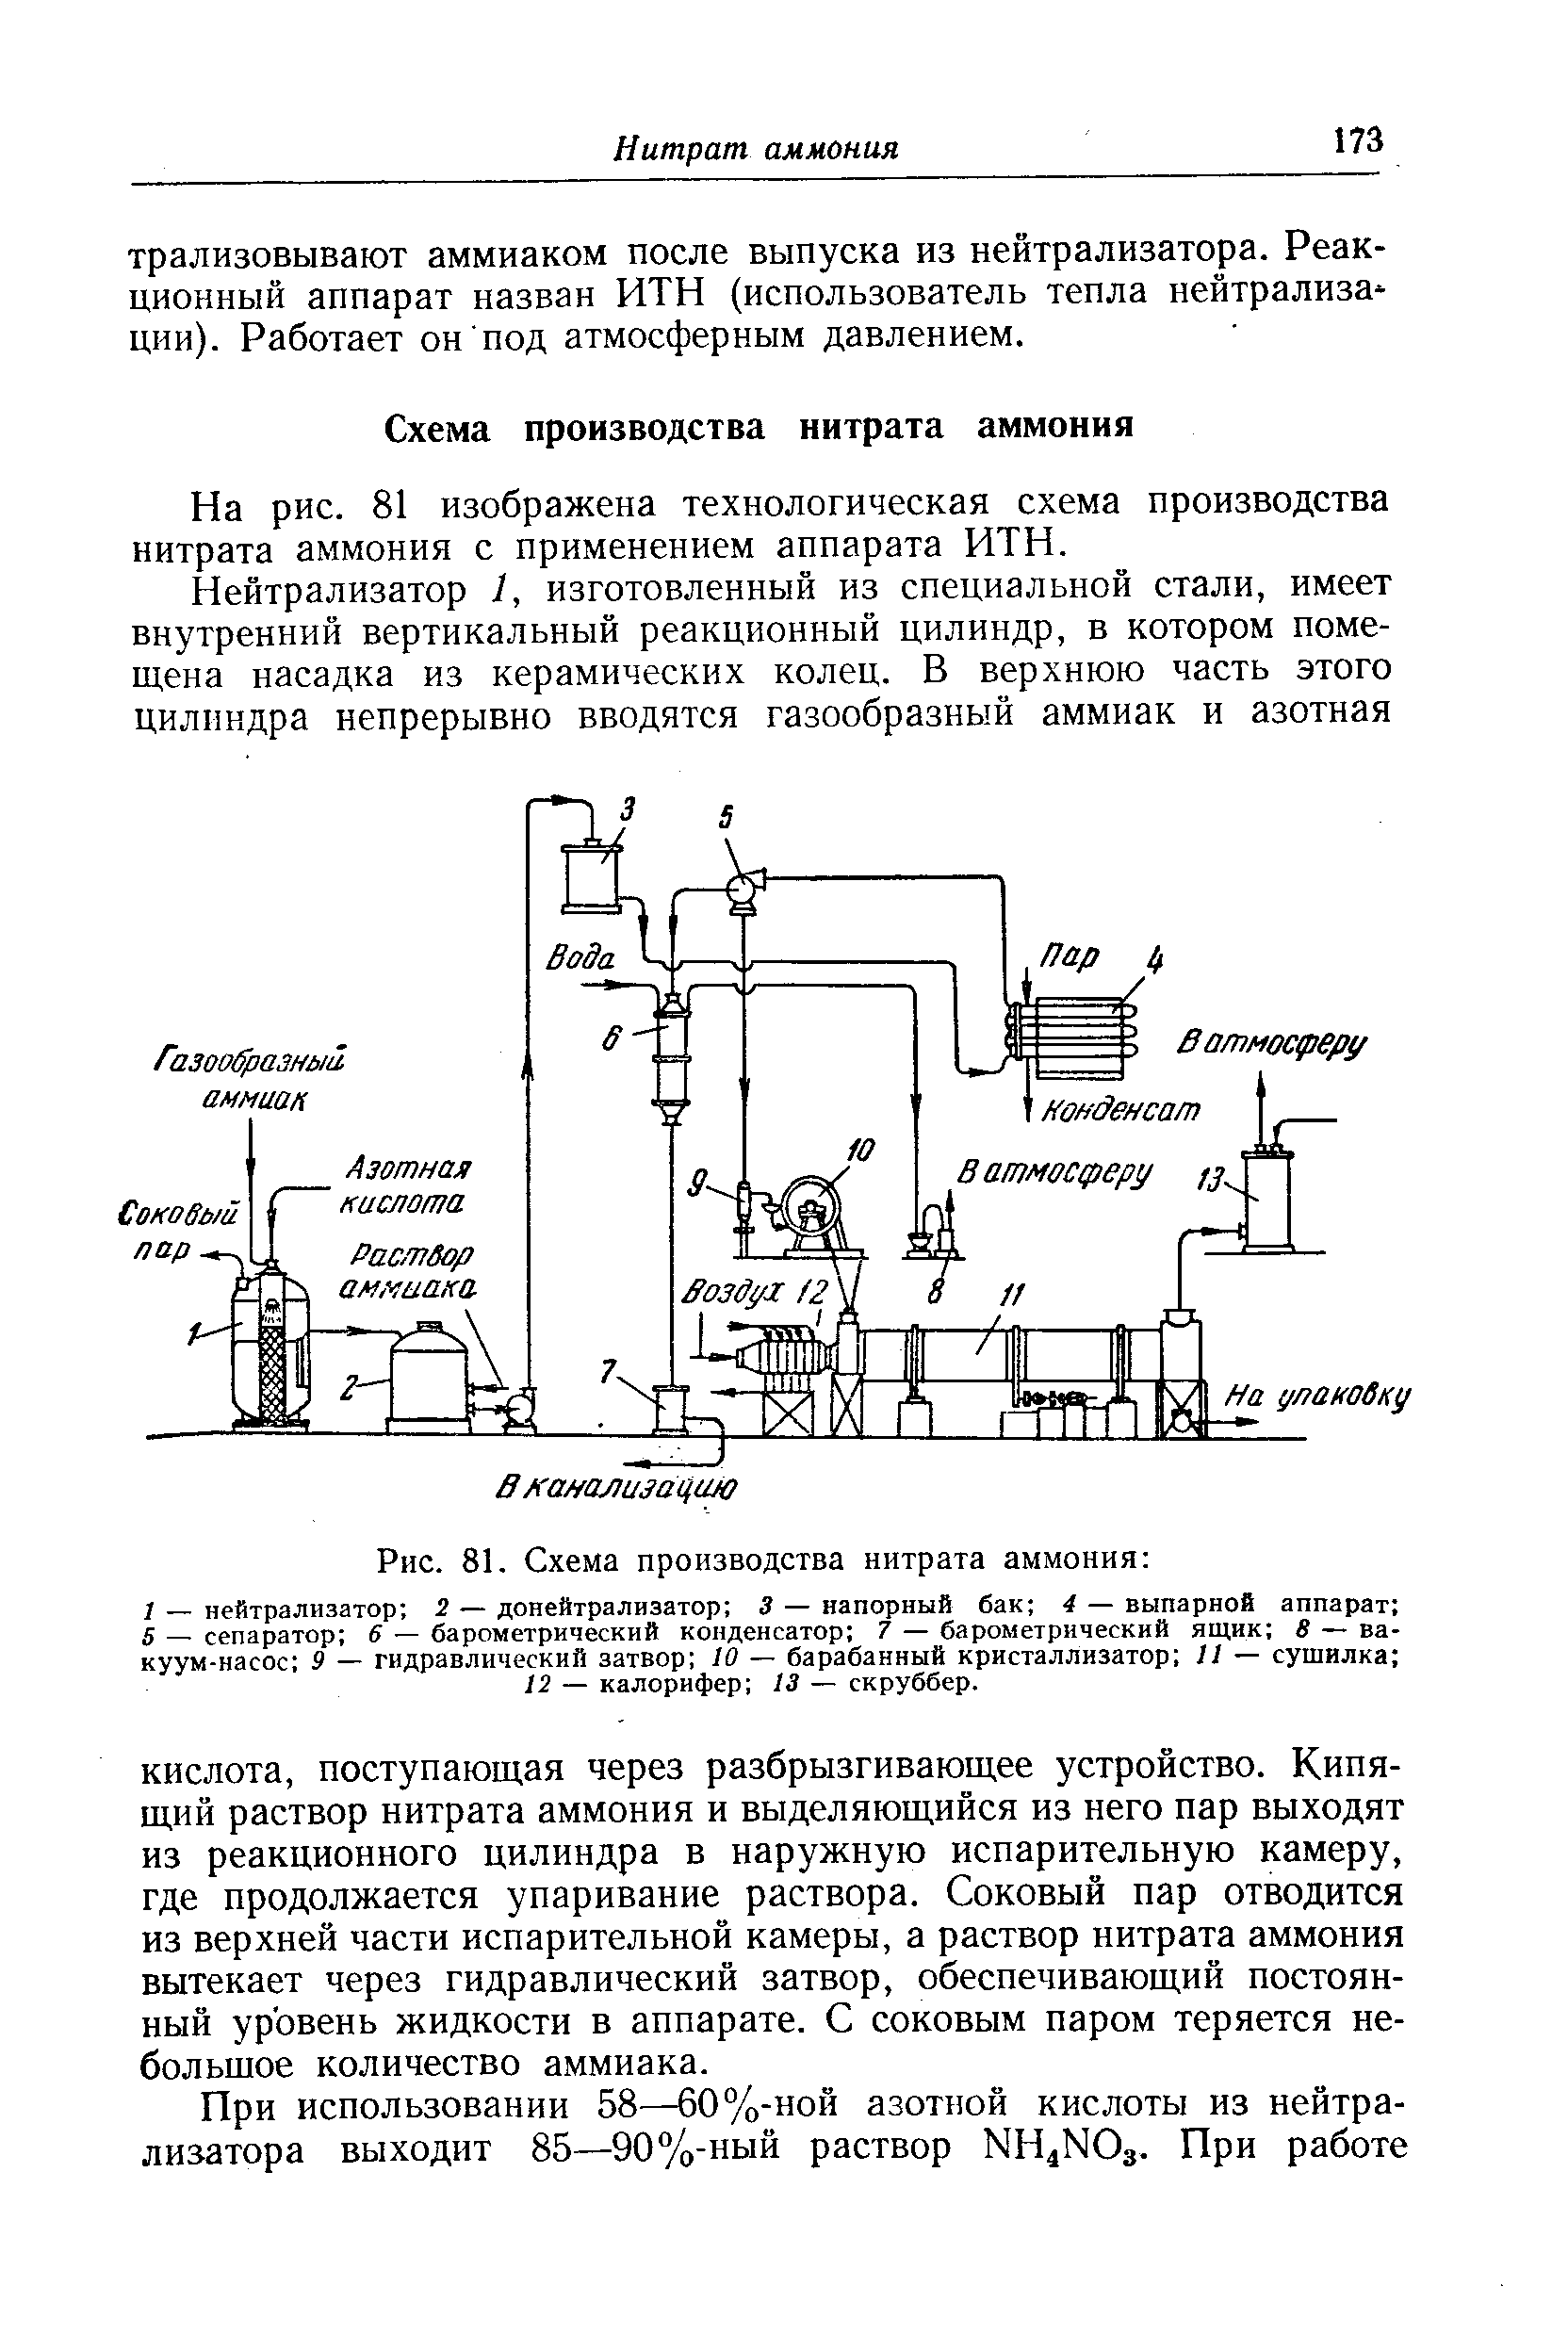 На рис. 81 изображена технологическая схема производства нитрата аммония с применением аппарата ИТН.